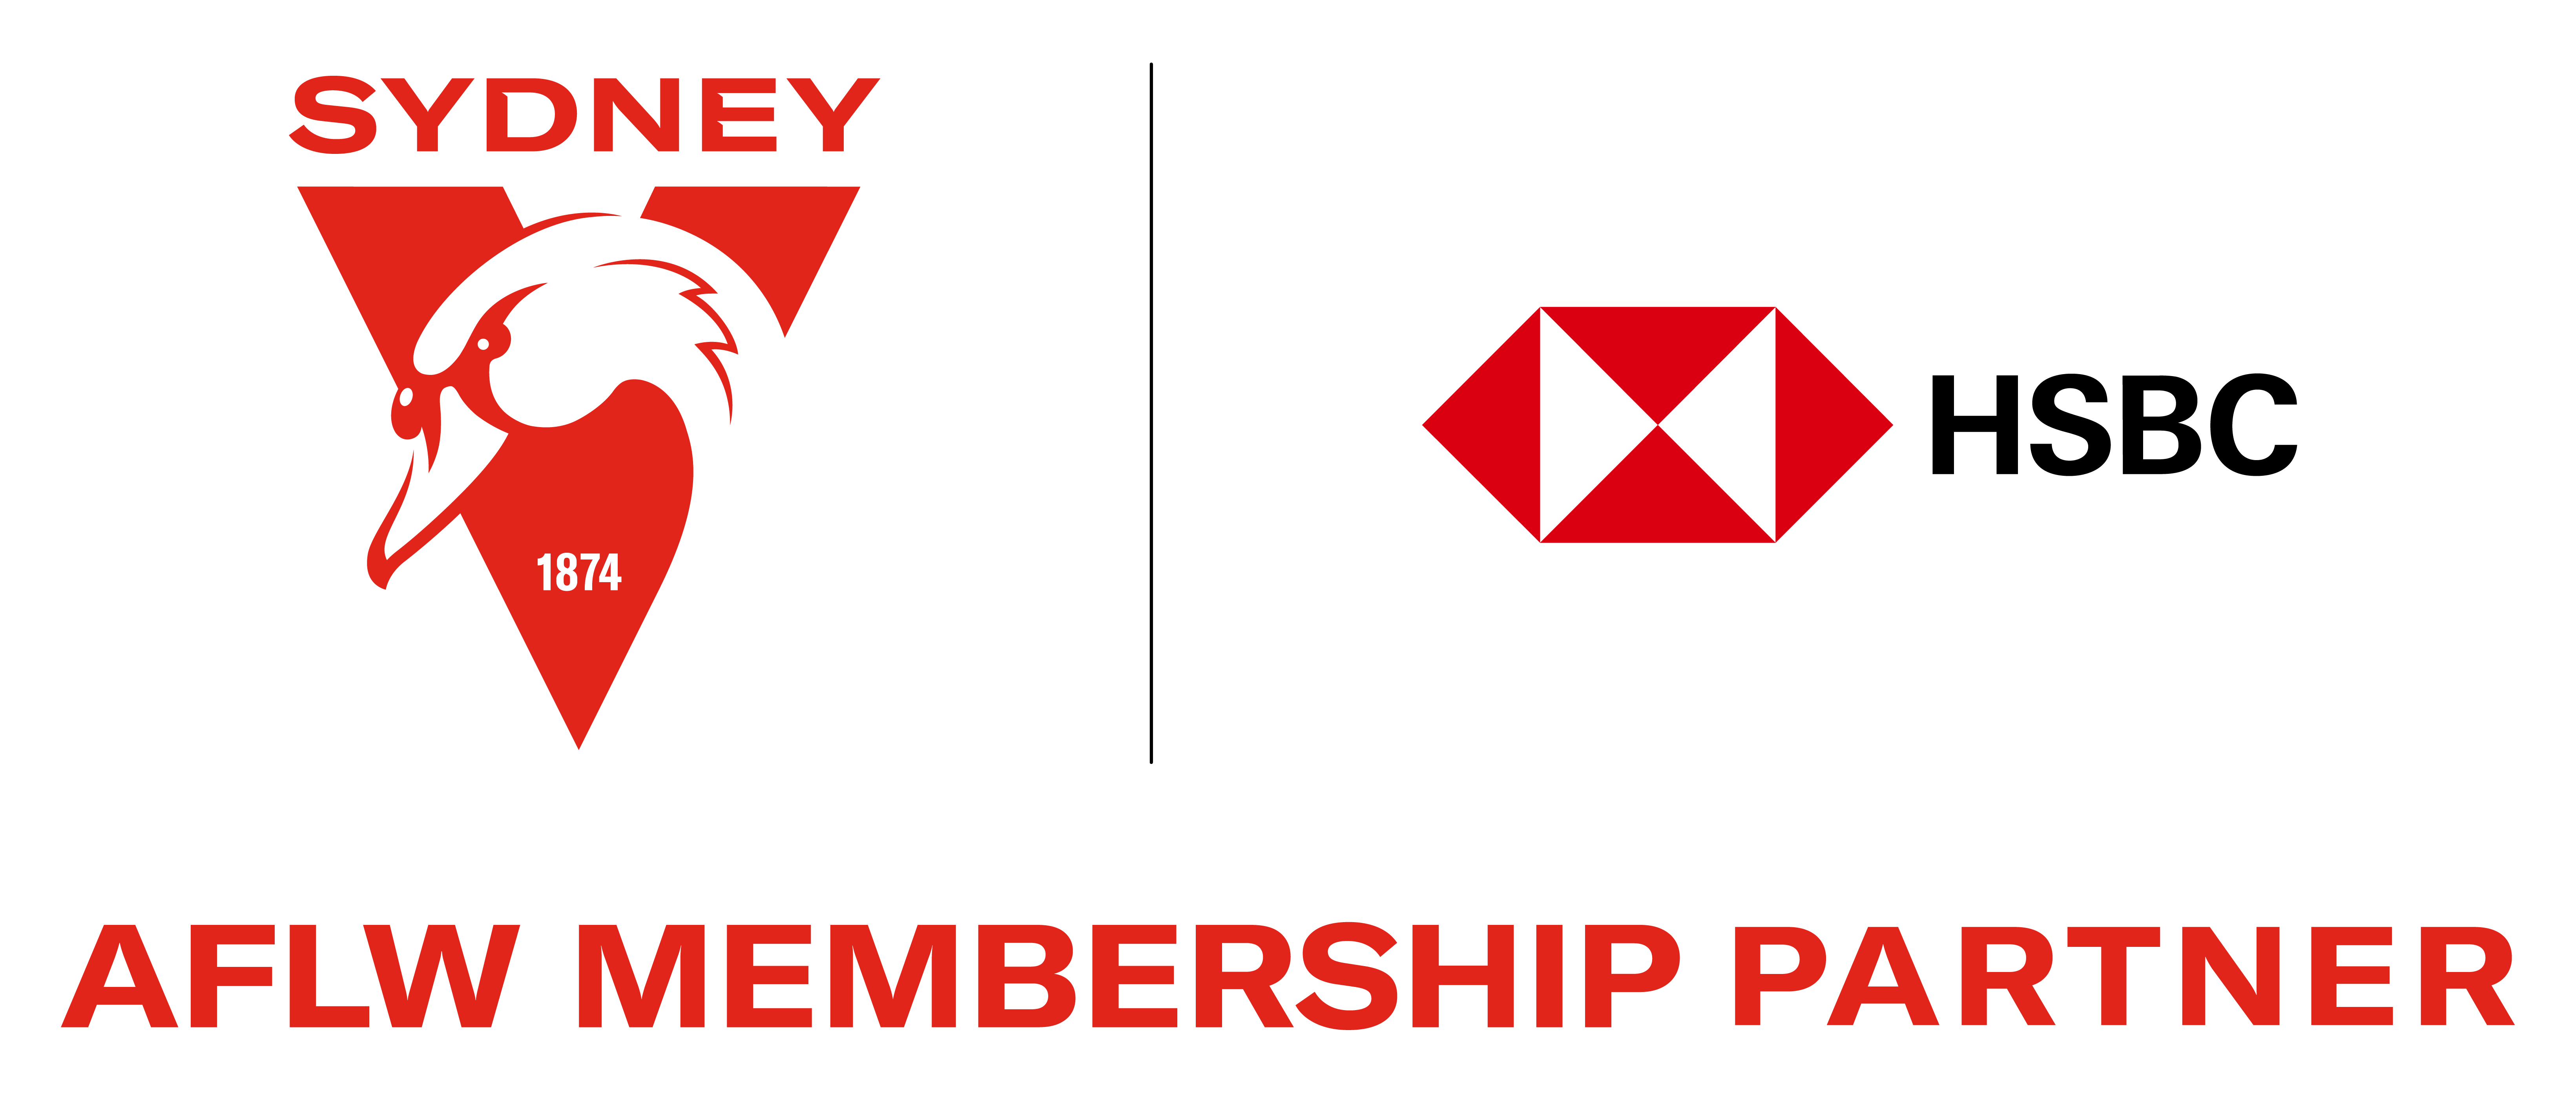 HSBC Membership Partner